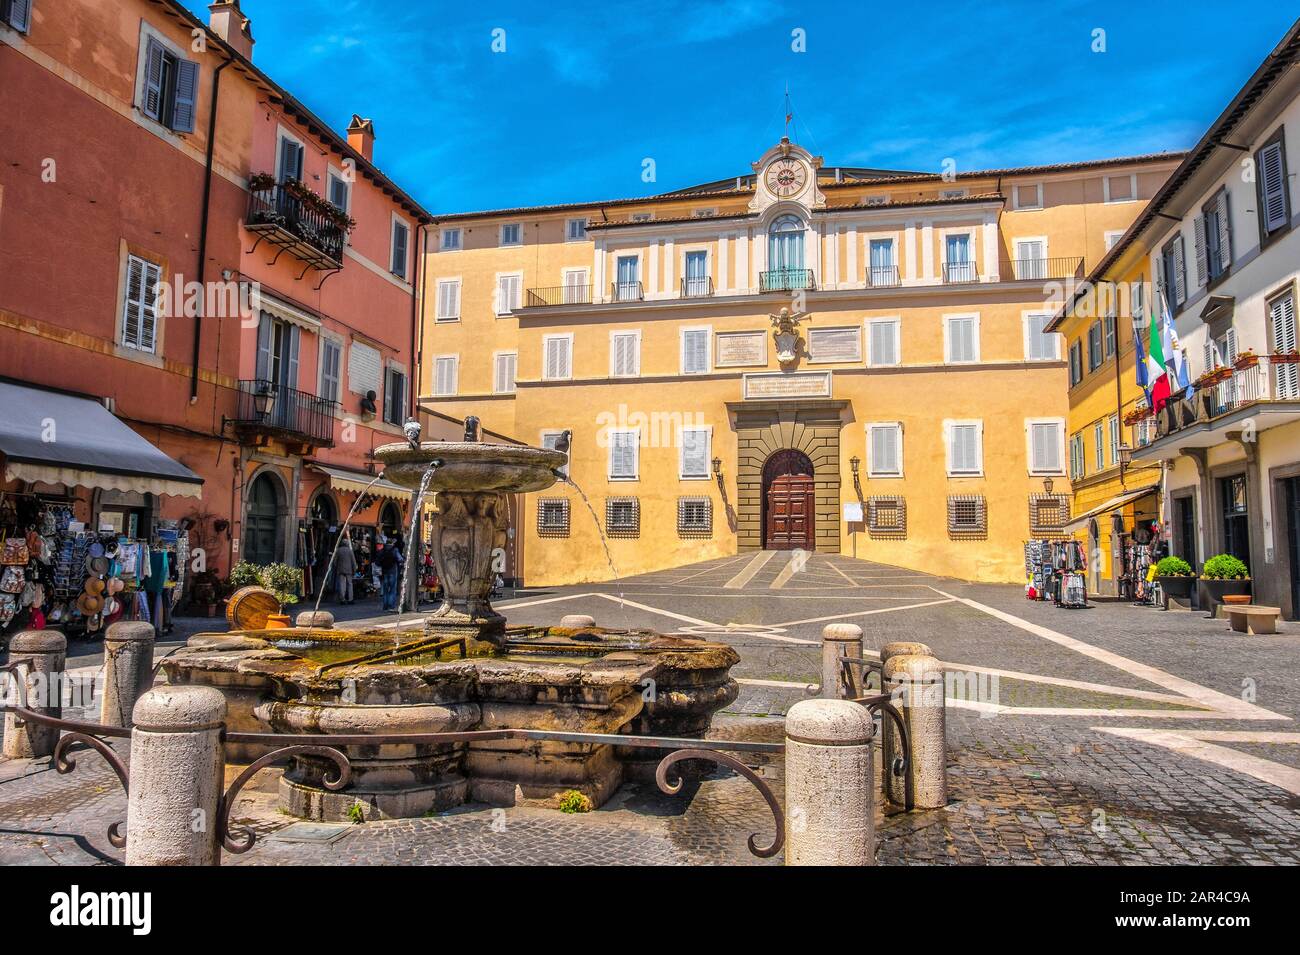 Rome province local landmark - Castel Gandolfo in Lazio - Italy - Palazzo Pontificio building in Piazza della Liberta fountain Stock Photo